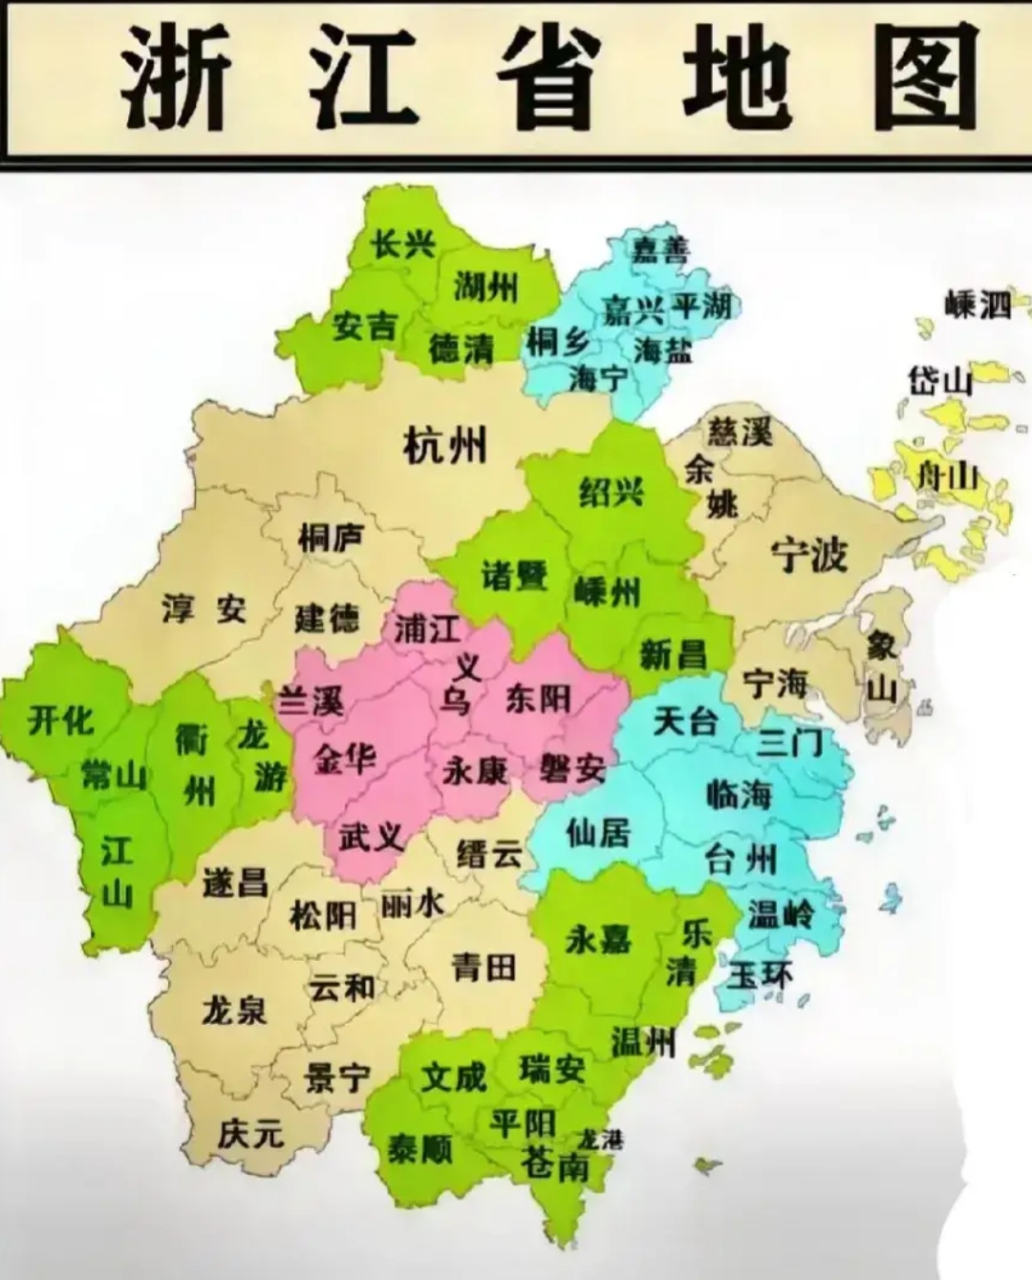 义乌市应该作为浙江省的省会城市,理由: 1,位置最好,义乌处于浙江省的